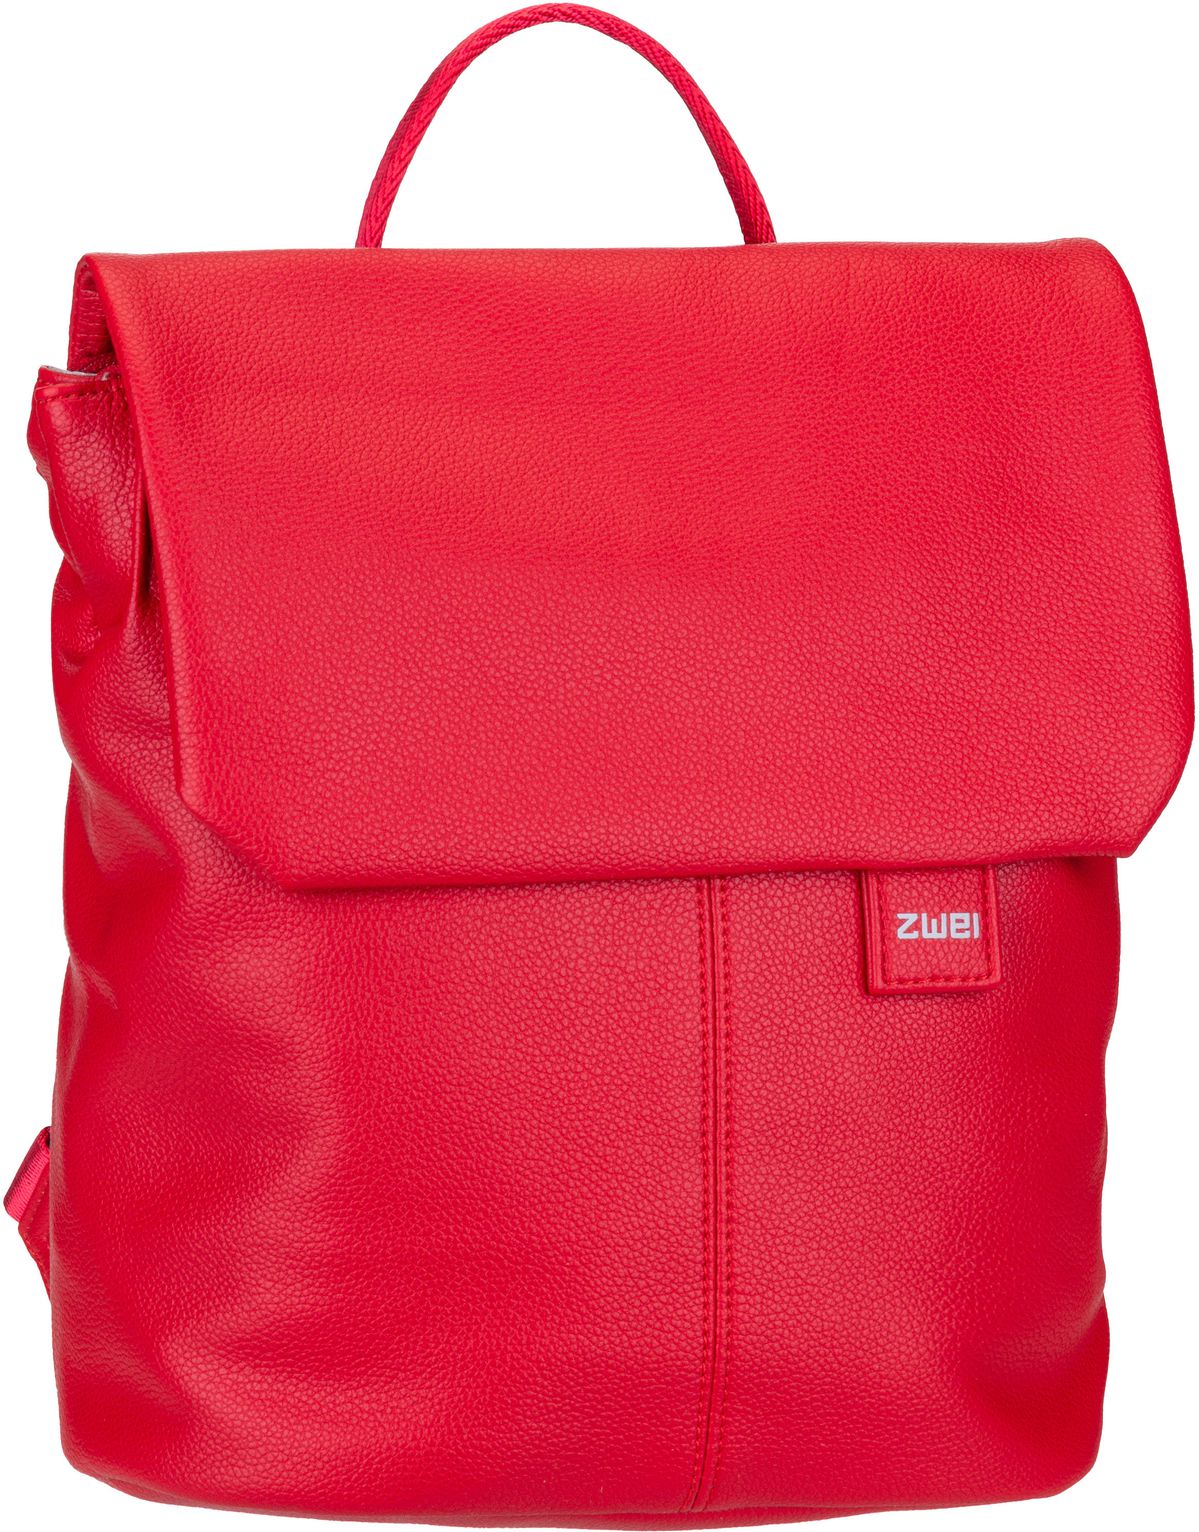 zwei Mademoiselle MR8  in Rot (4 Liter), Rucksack / Backpack